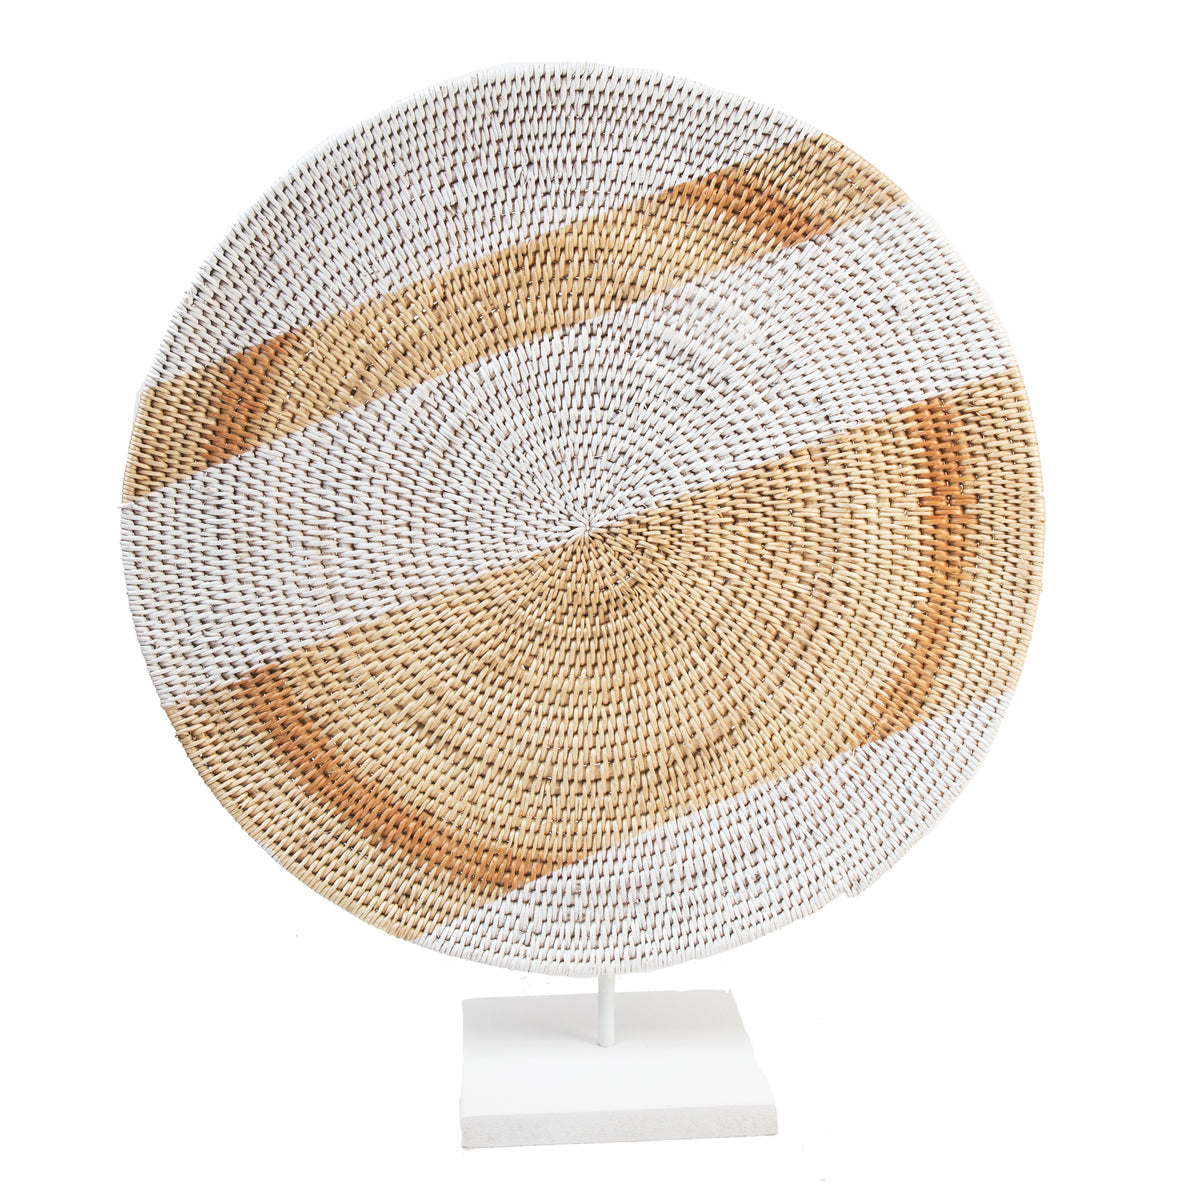 Painted Makenge Basket - Zambia - 25F